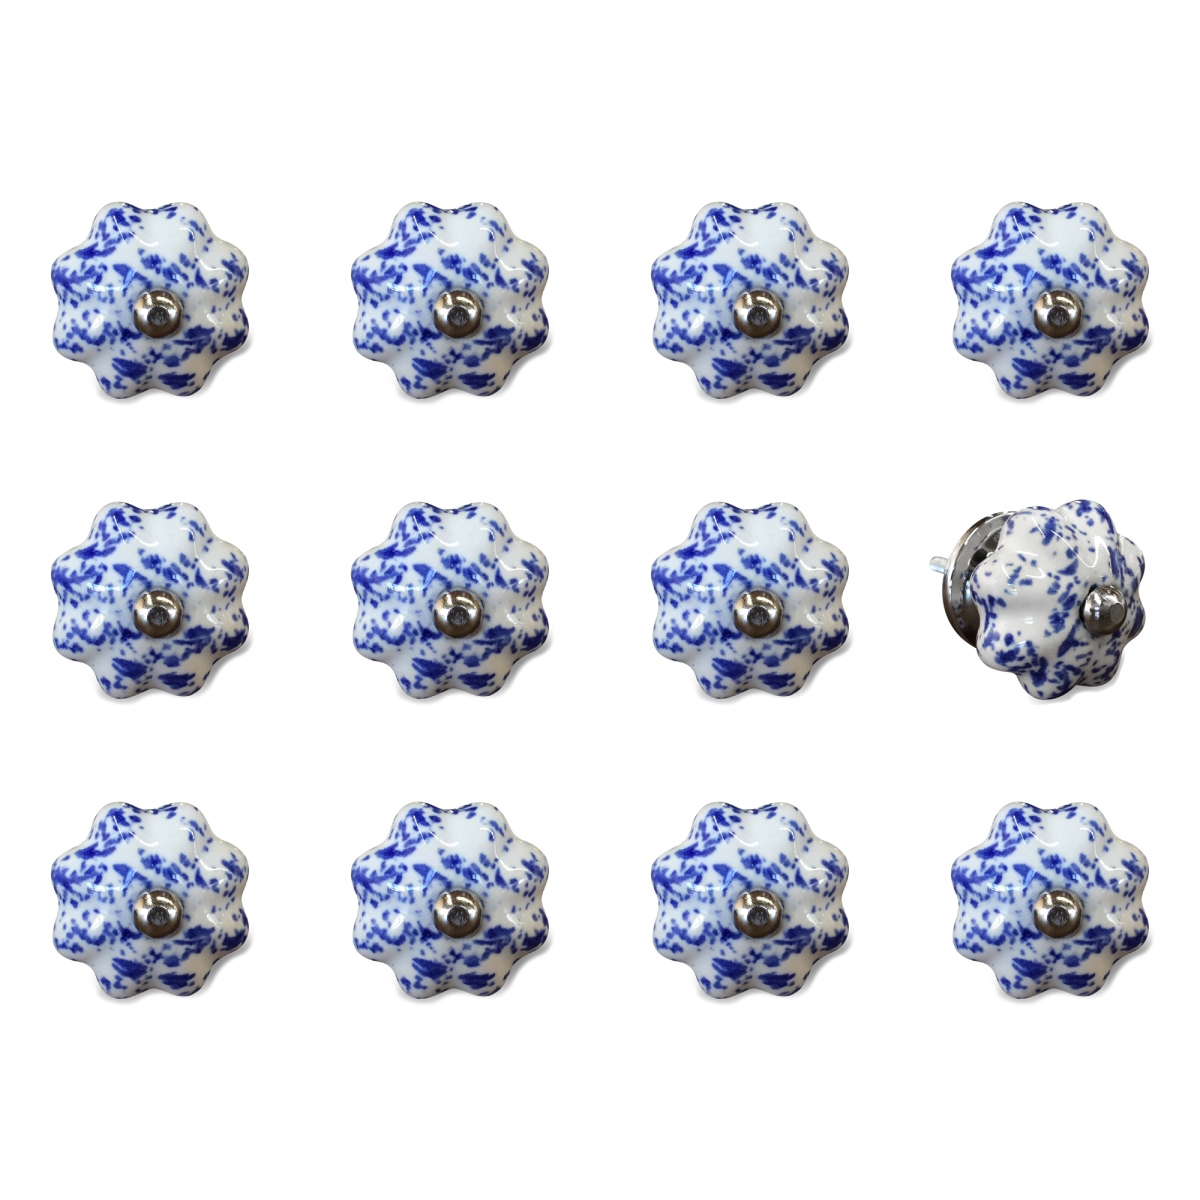 676685033123 Vintage Ceramic Vintage Knob Set - Blue & White - Pack Of 12